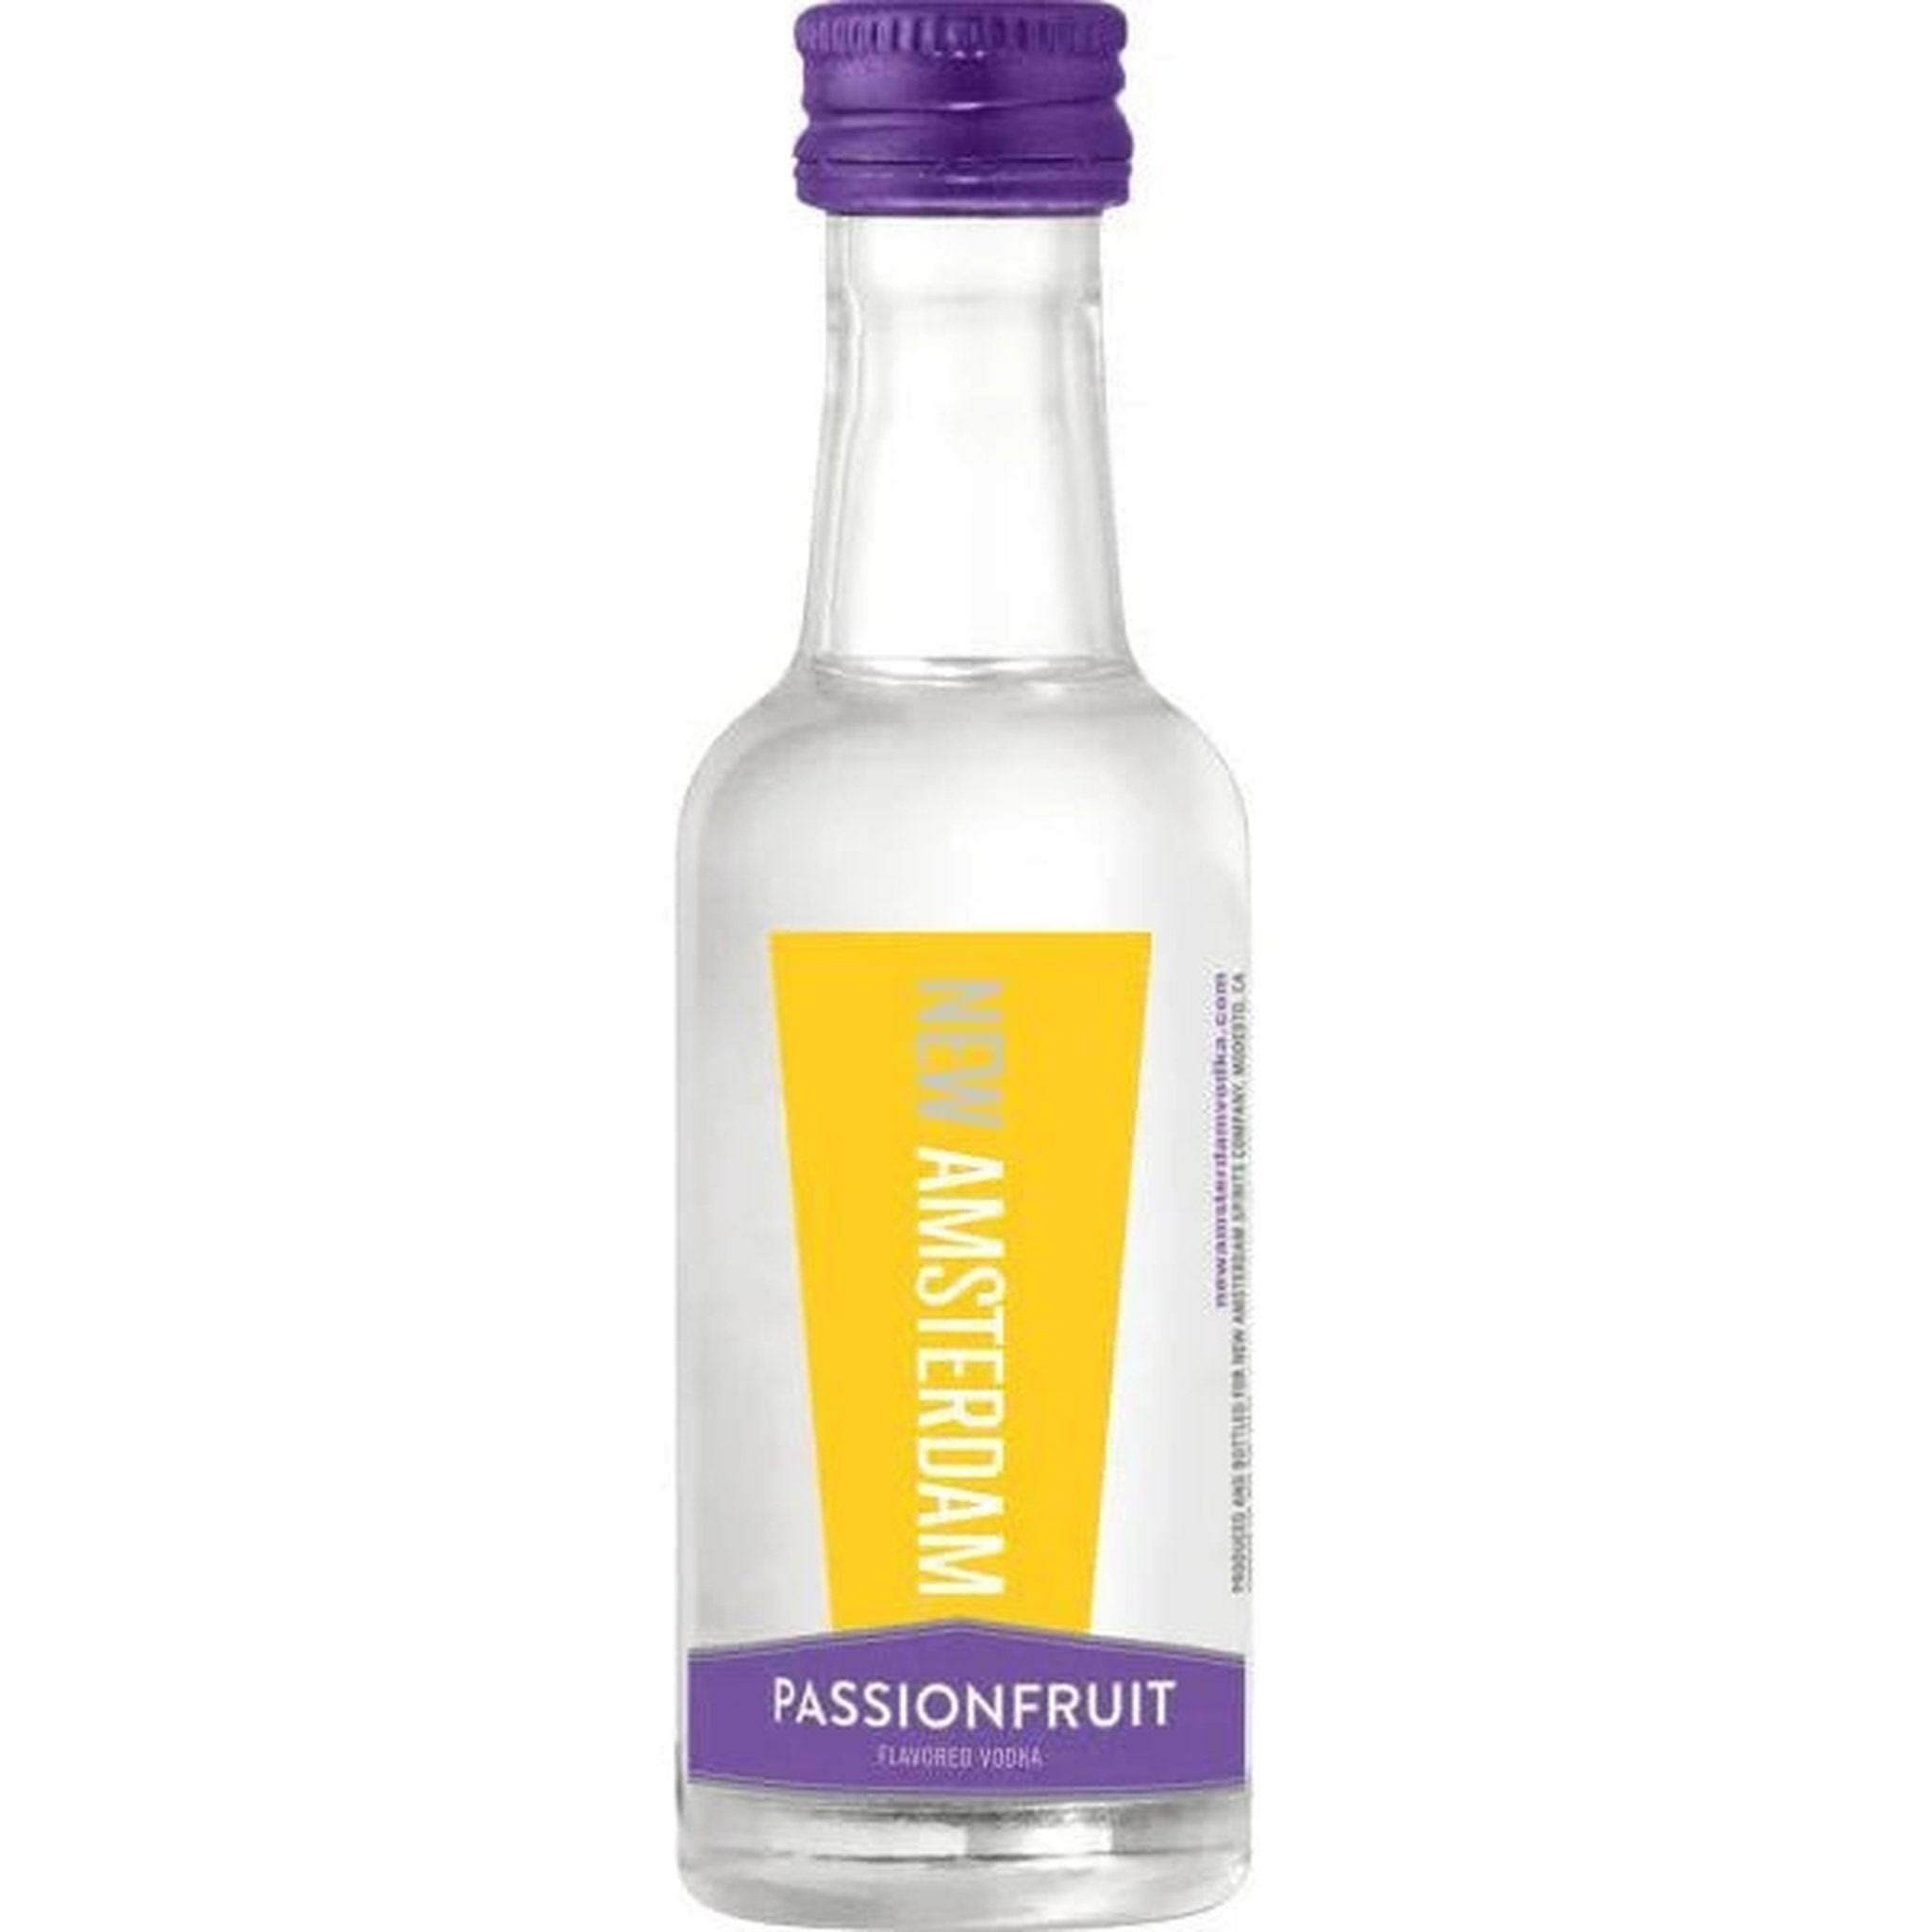 New Amsterdam - Passionfruit Vodka (50ml)